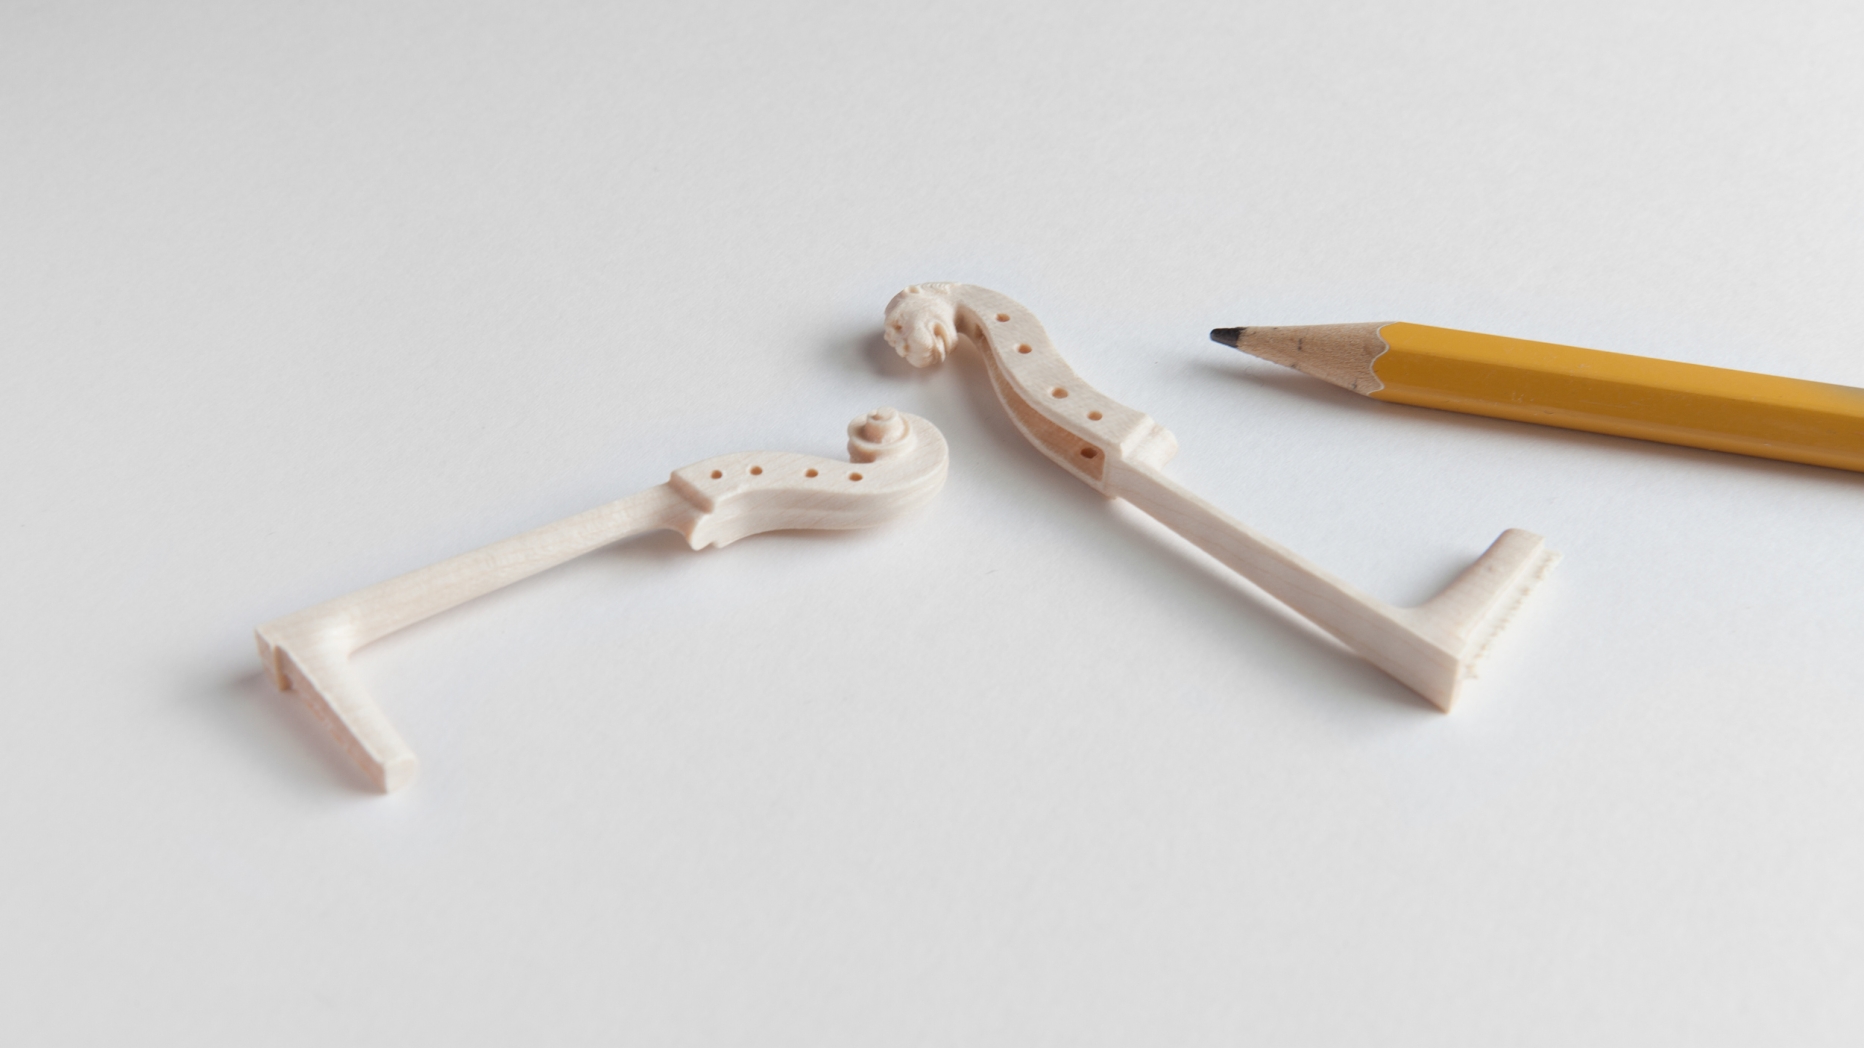 Miniature cello and viol necks next to pencil for comparison